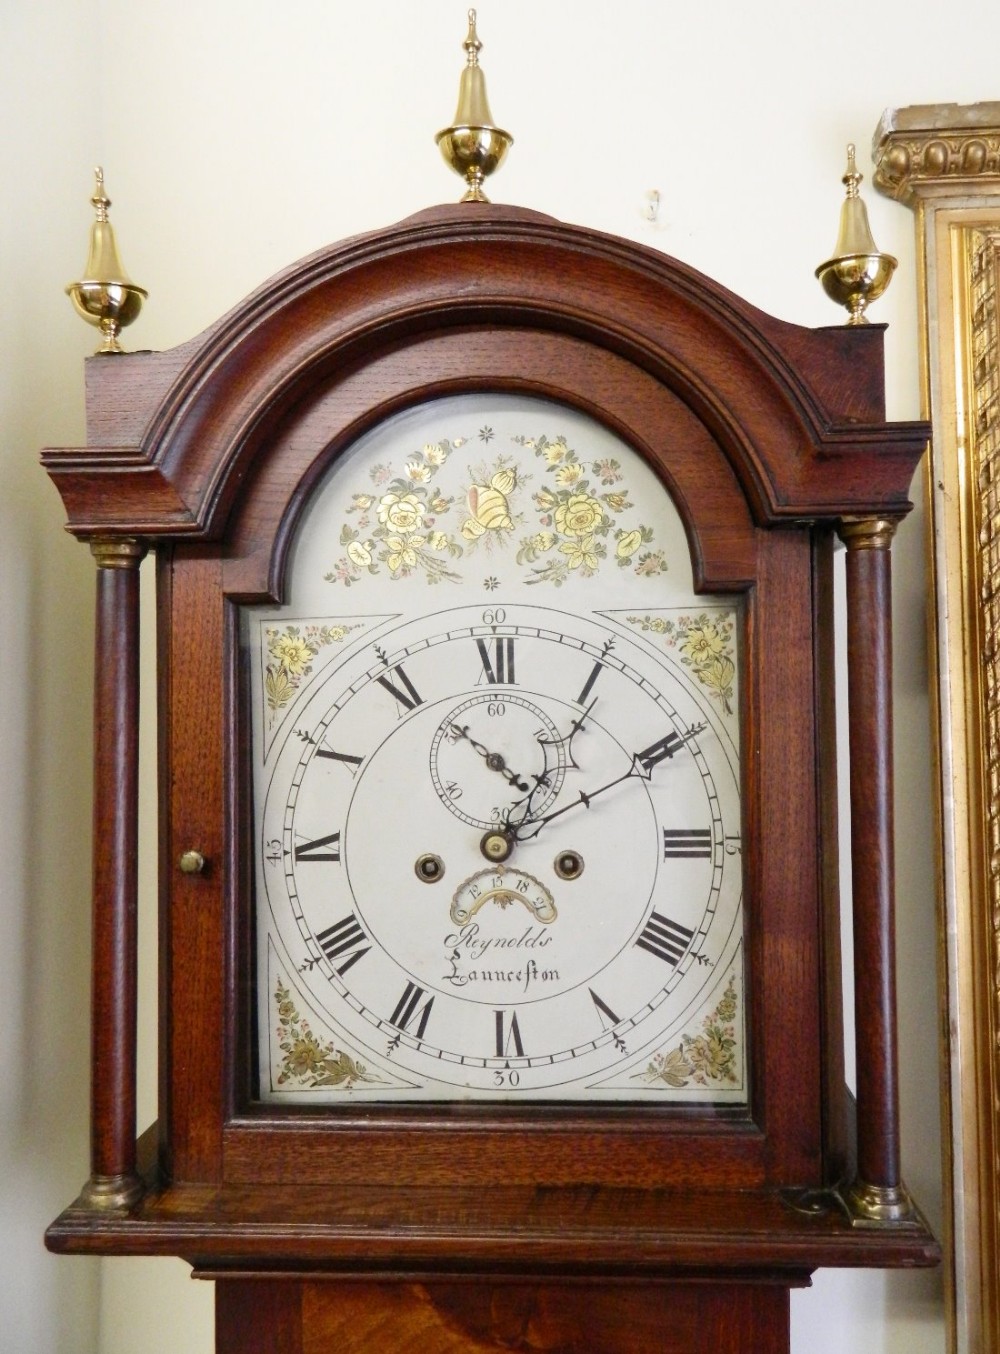 early oak elm grandfather clock by reynolds of launceston